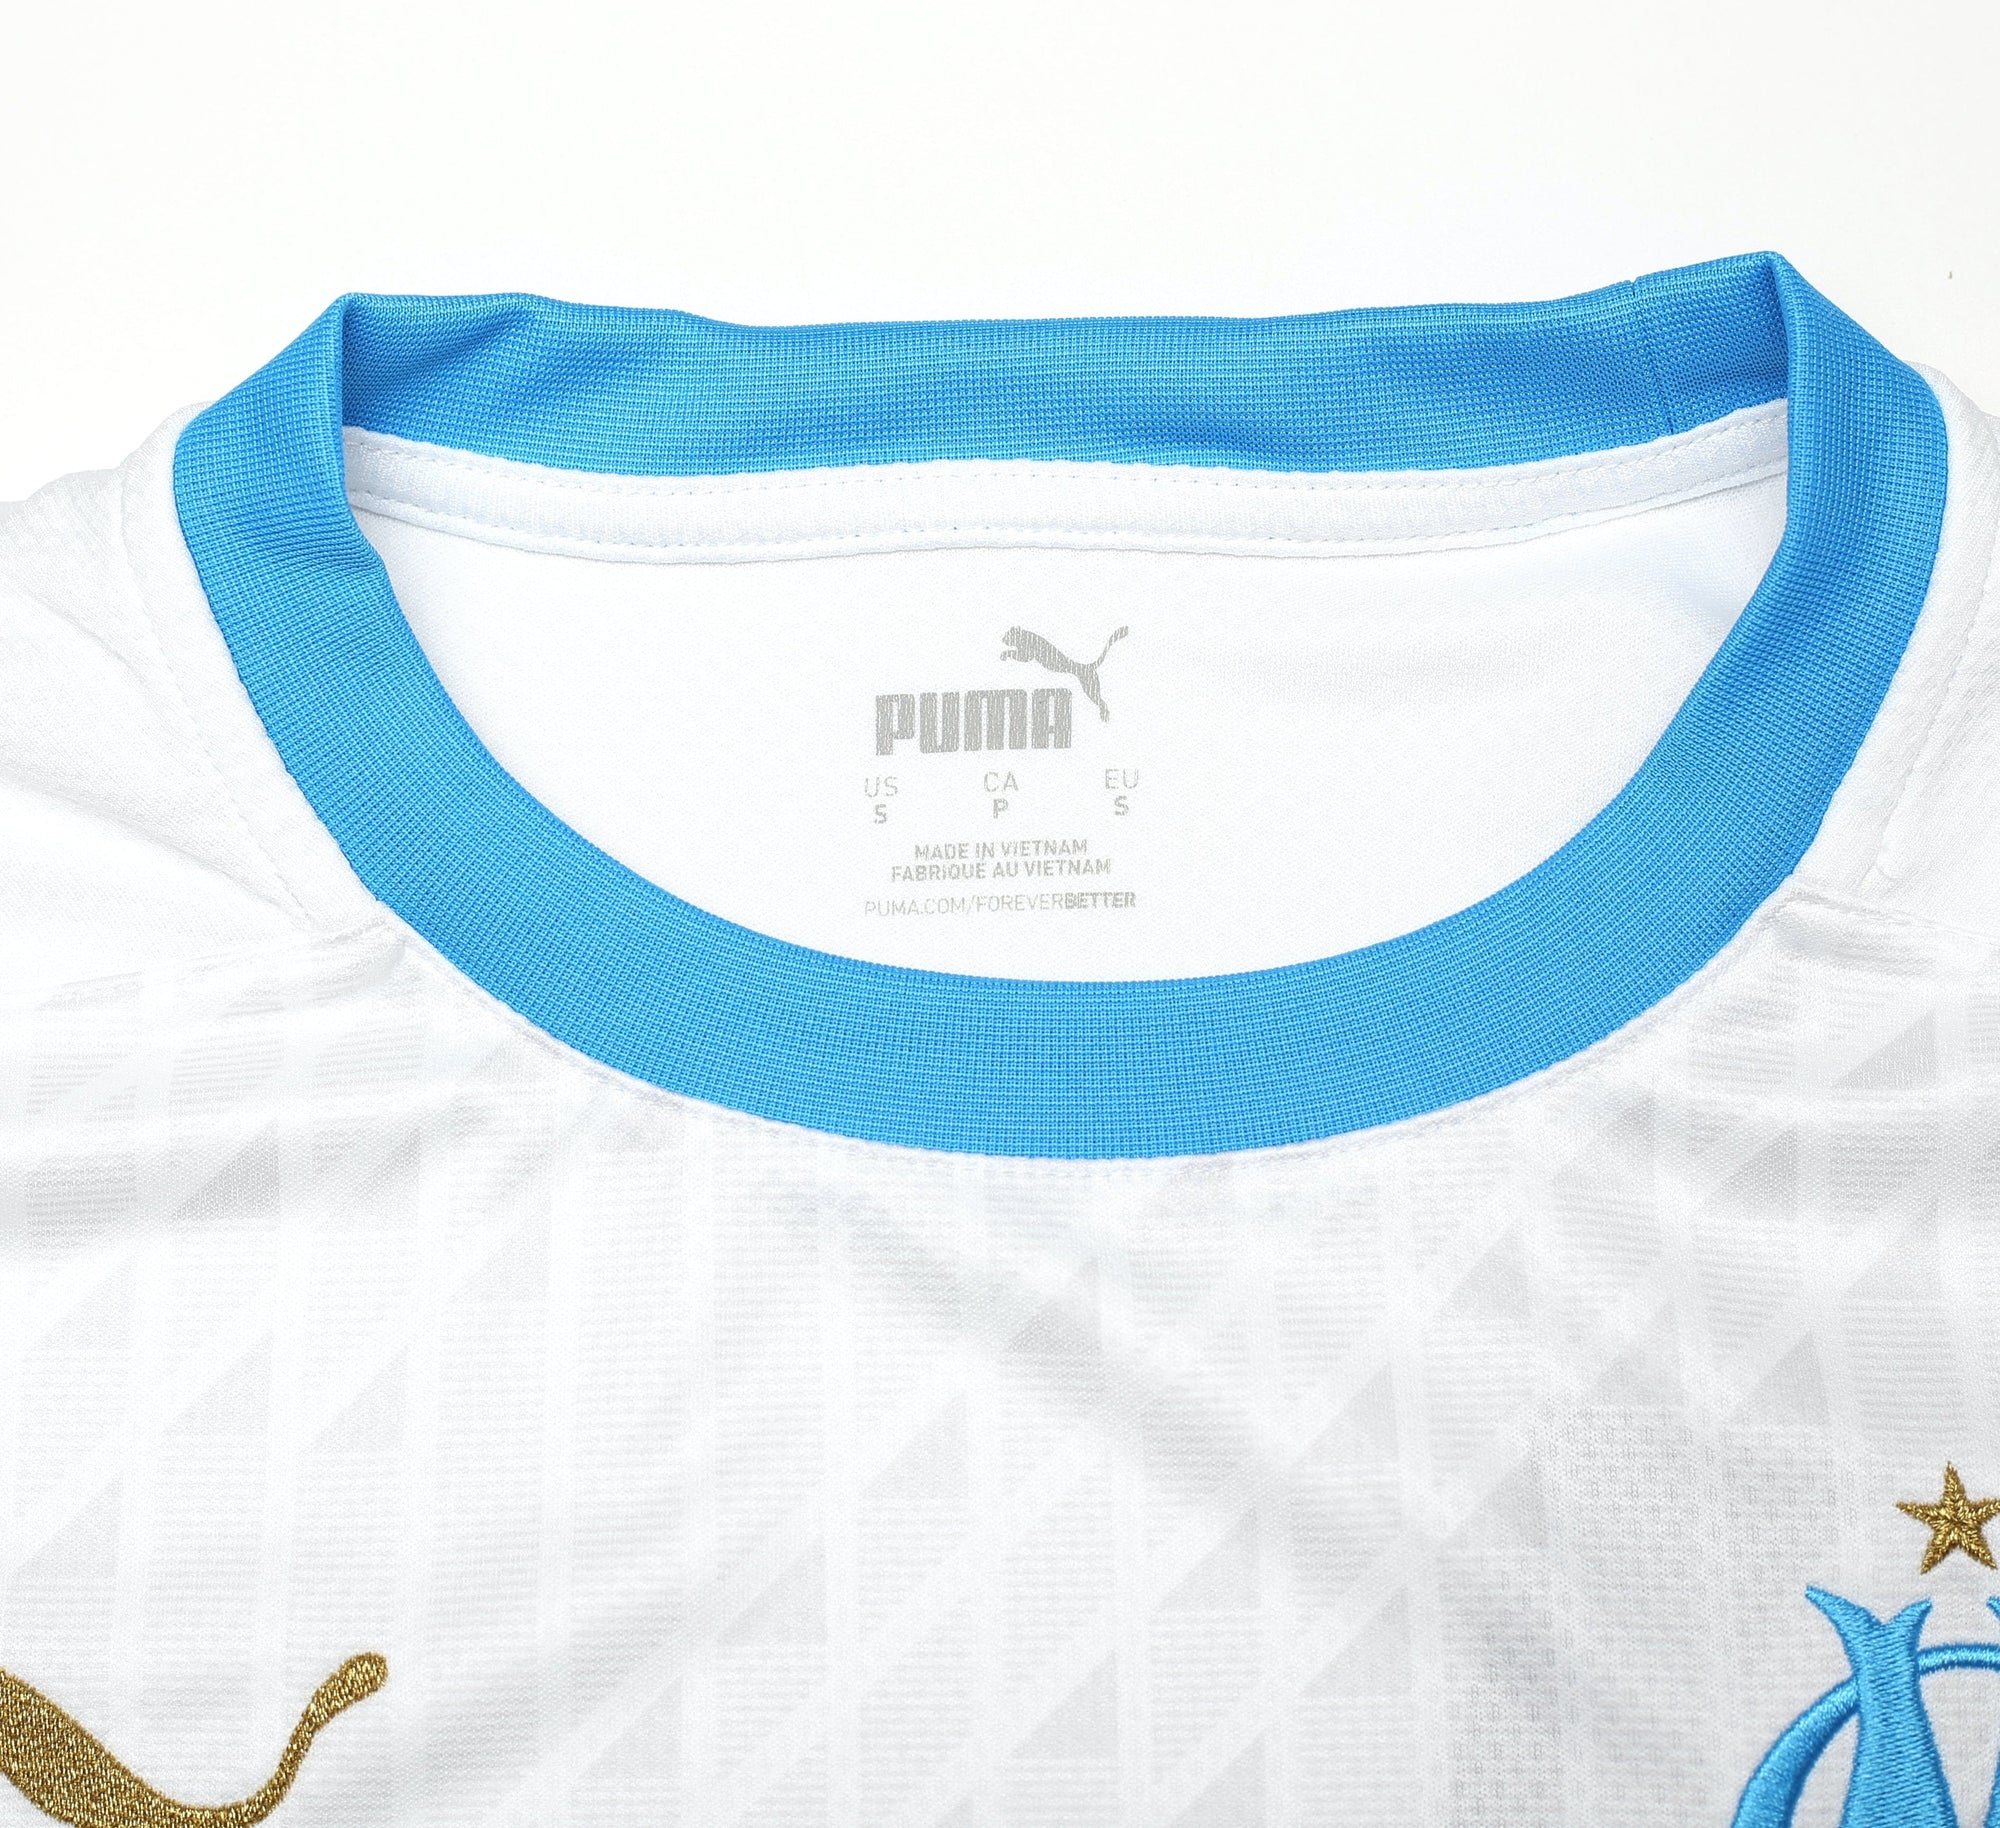 2020/21 MARSEILLE PUMA Home Football Shirt (S)